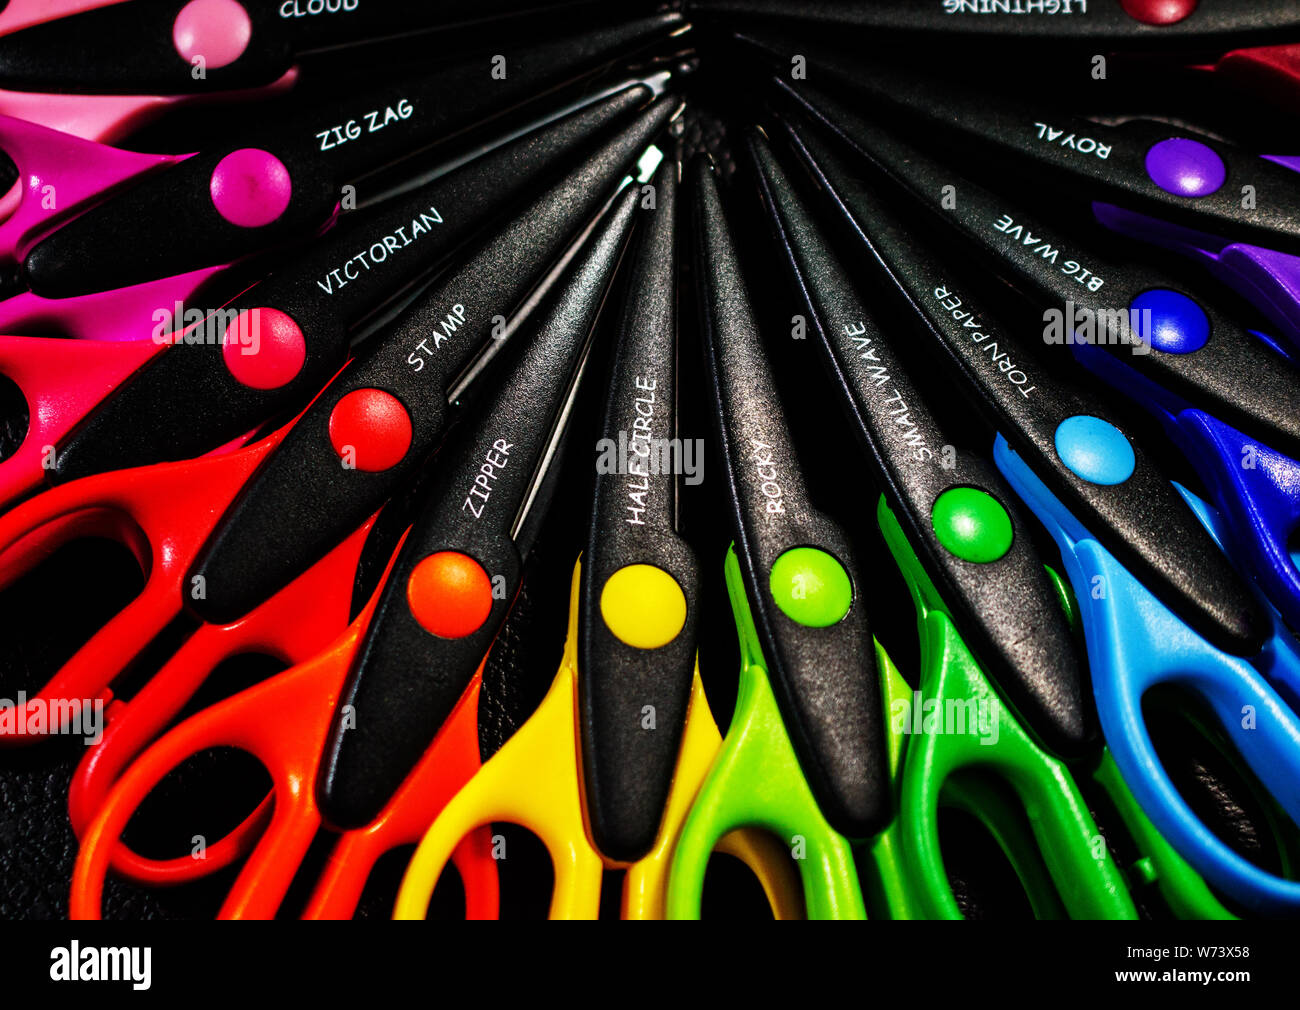 Rainbow of Plastic Decorative Edge Scissors Stock Photo